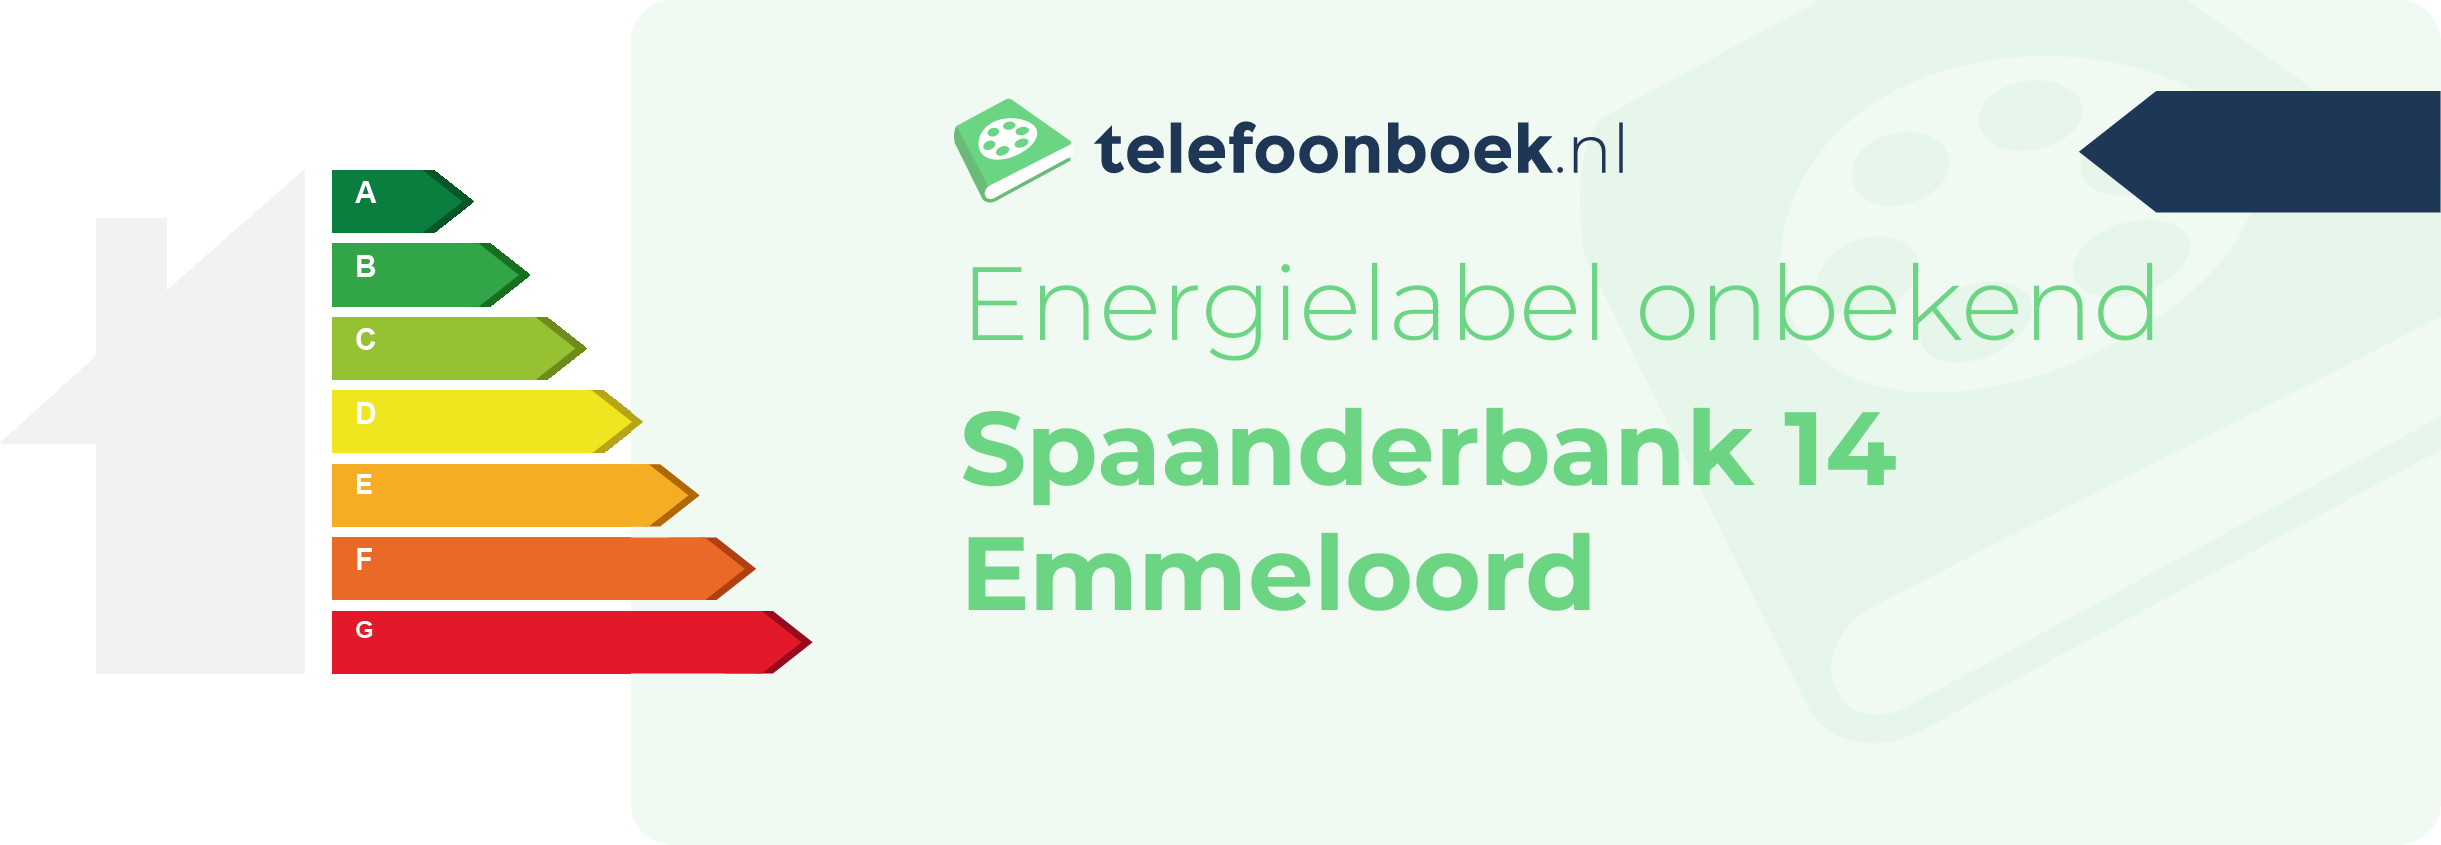 Energielabel Spaanderbank 14 Emmeloord